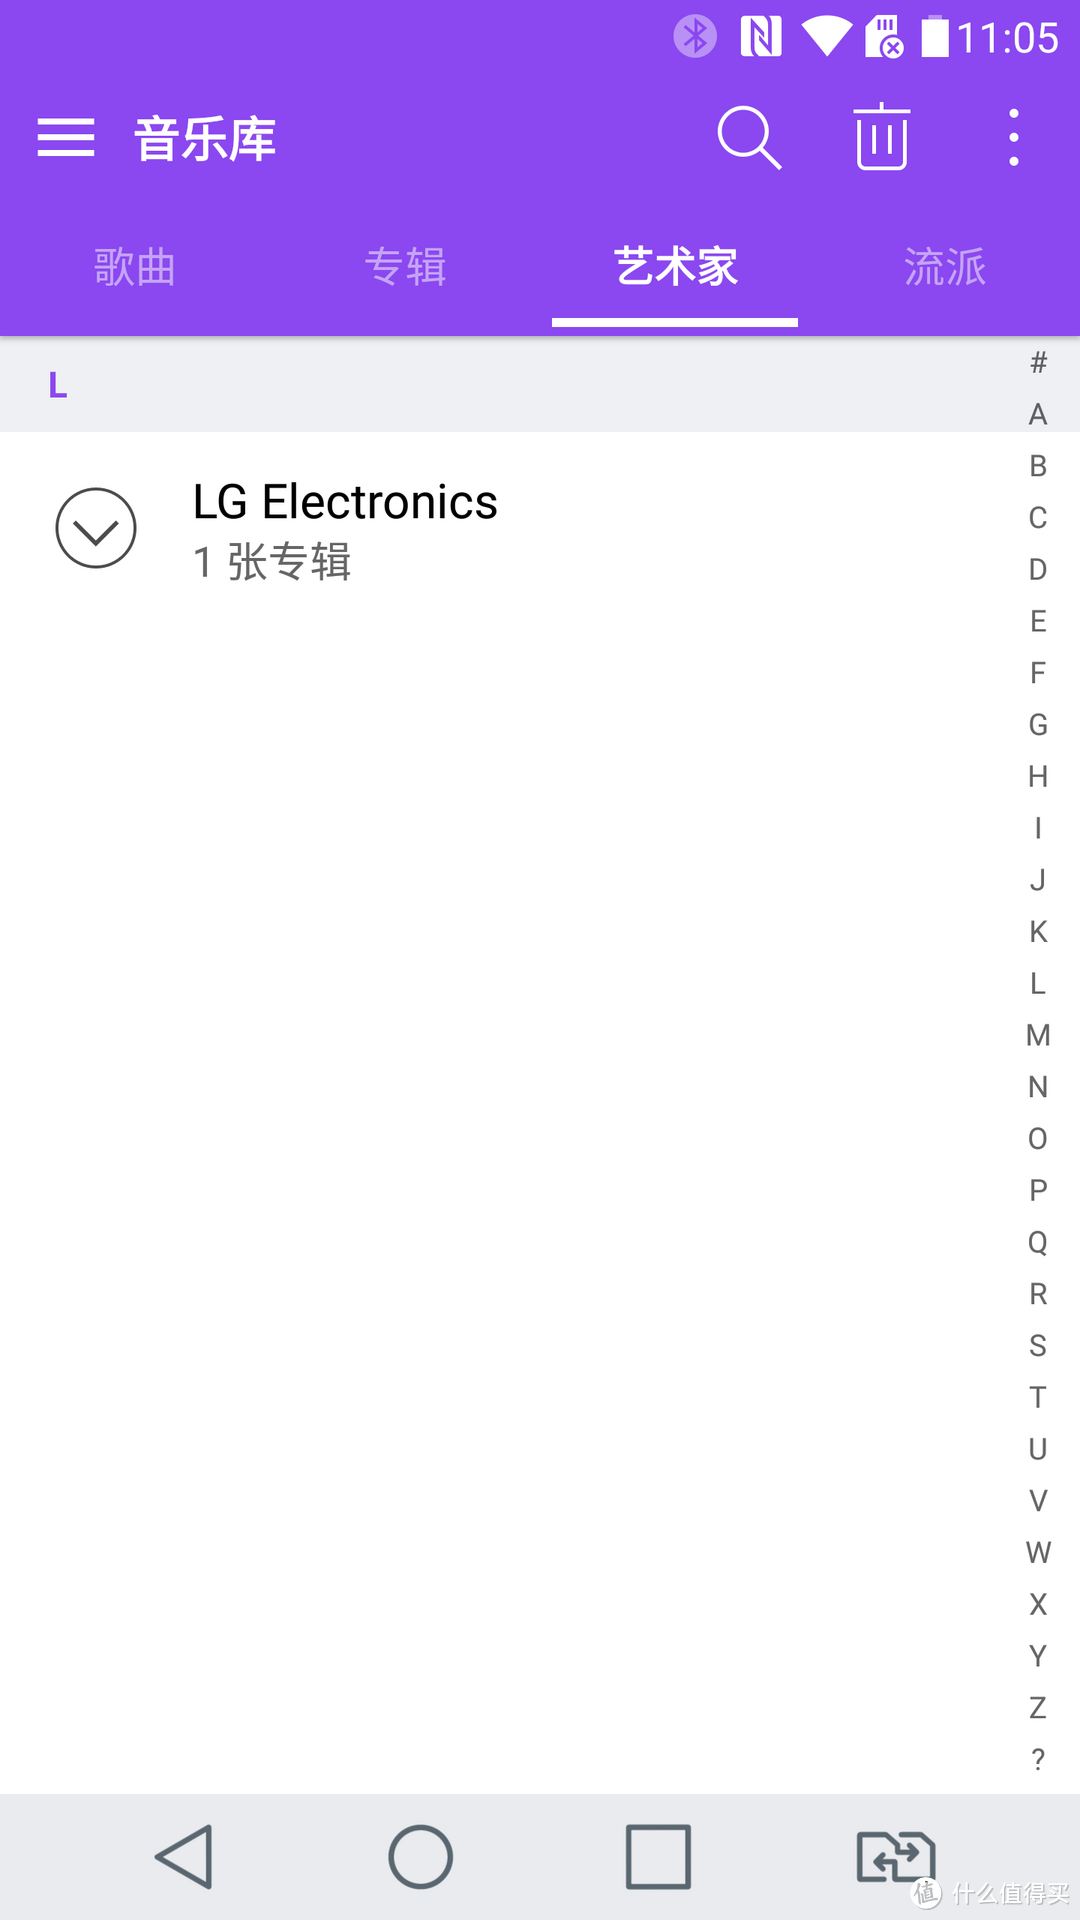 母亲节的献礼给母亲换新手机，LG G5 冰月银 全网通4G 双卡双待